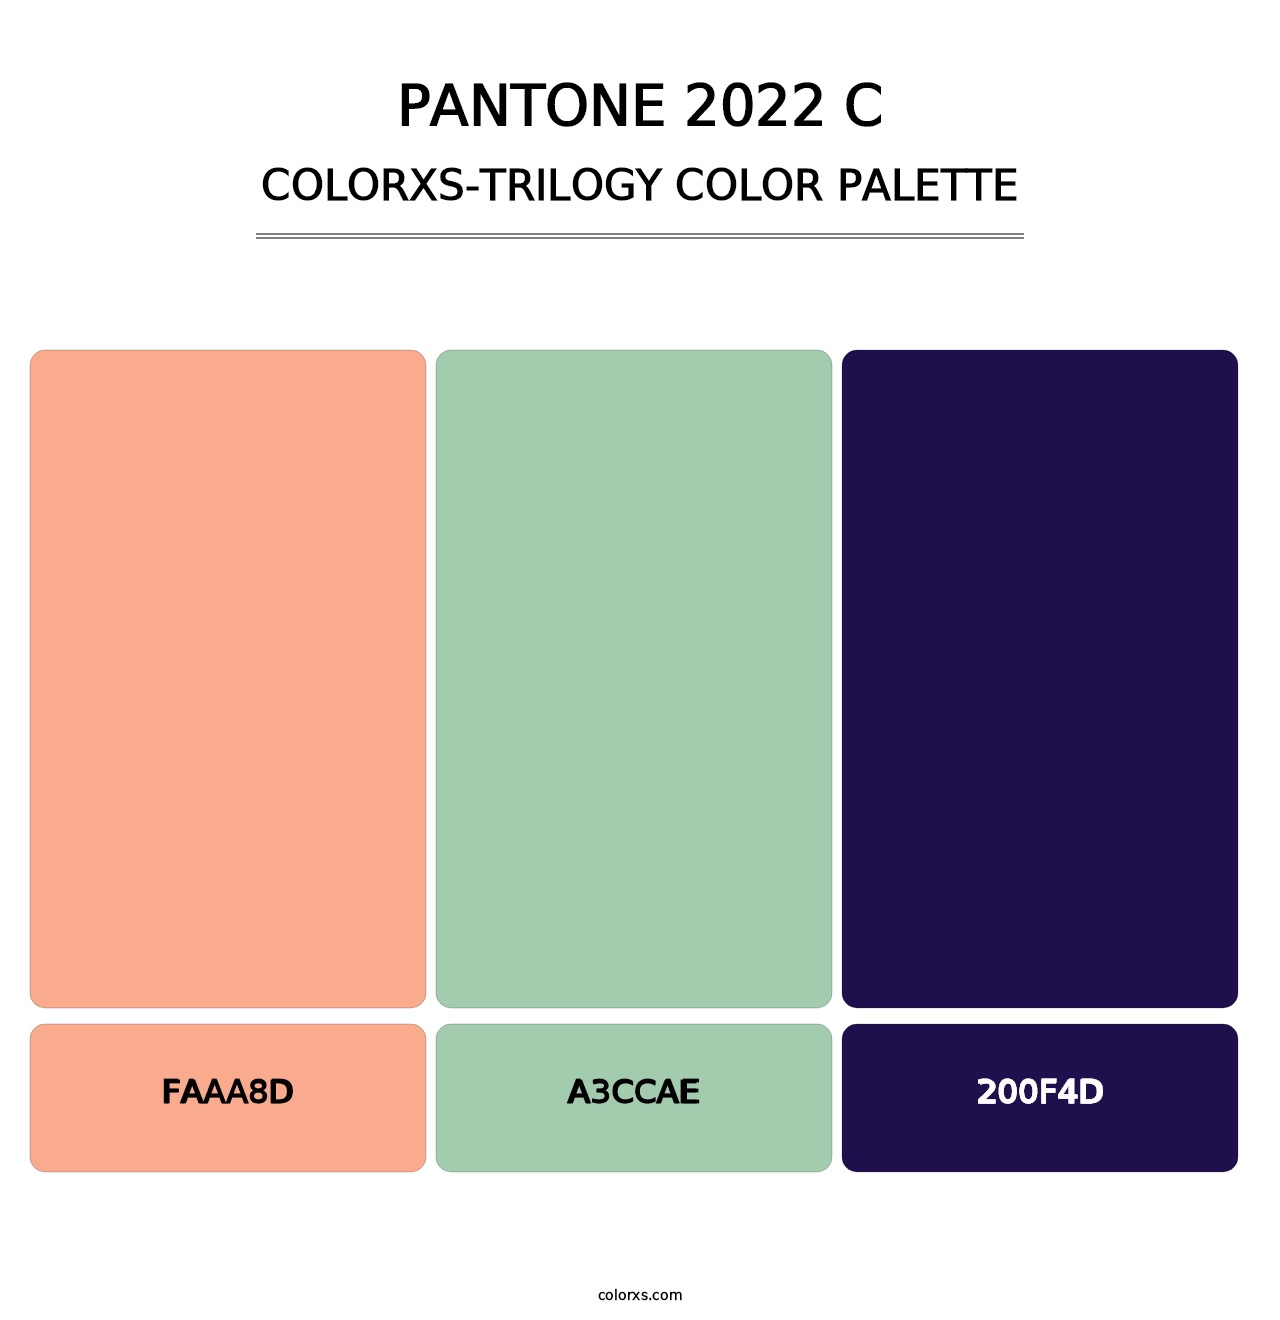 PANTONE 2022 C - Colorxs Trilogy Palette